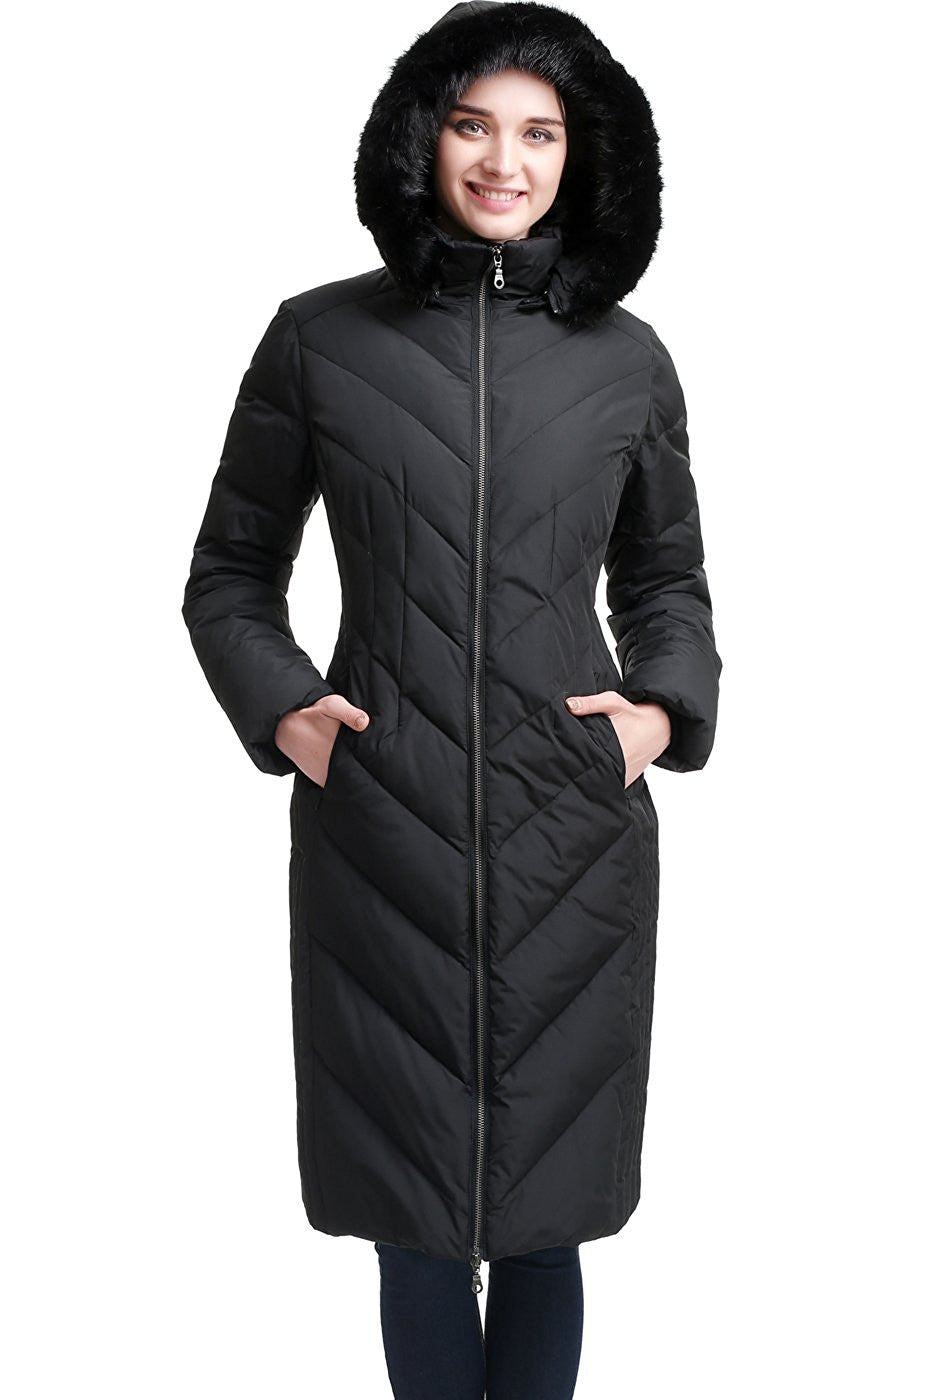 BGSD Women's "Marlene" Waterproof Hooded Long Down Coat - Plus